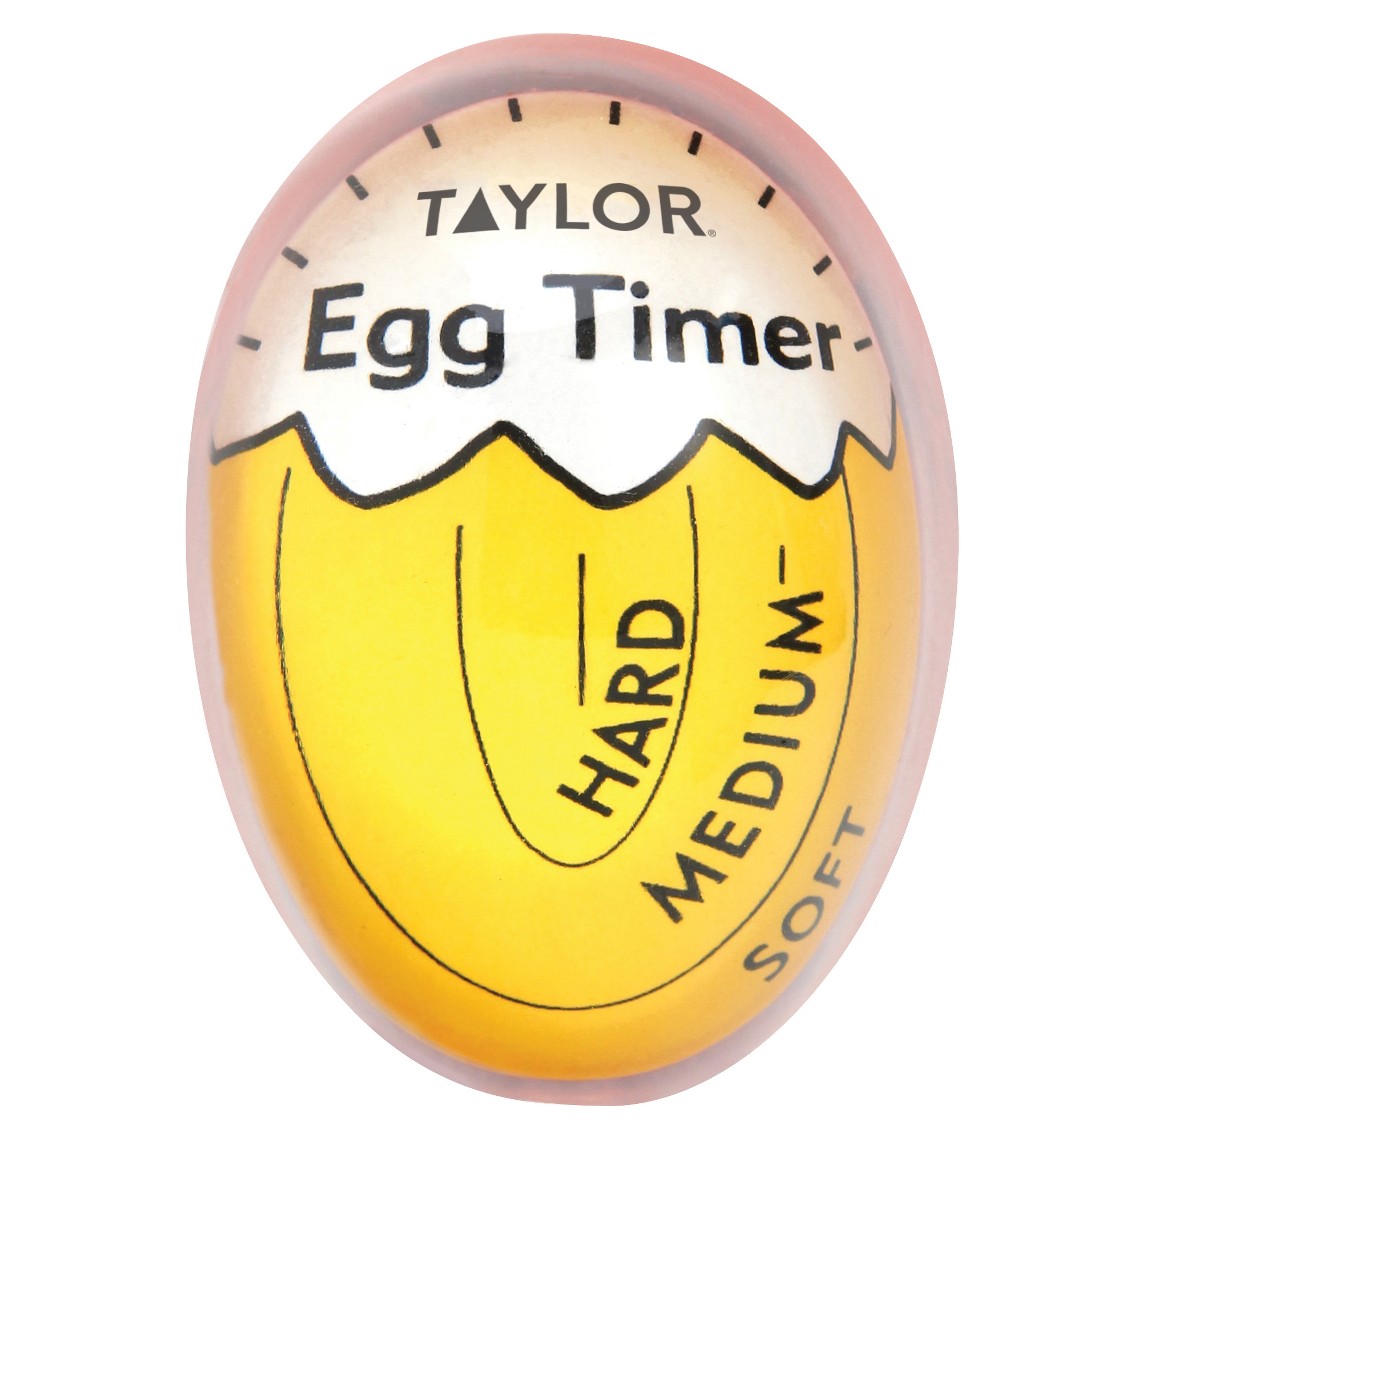 Taylor Color Changing Egg Timer - image 1 of 1